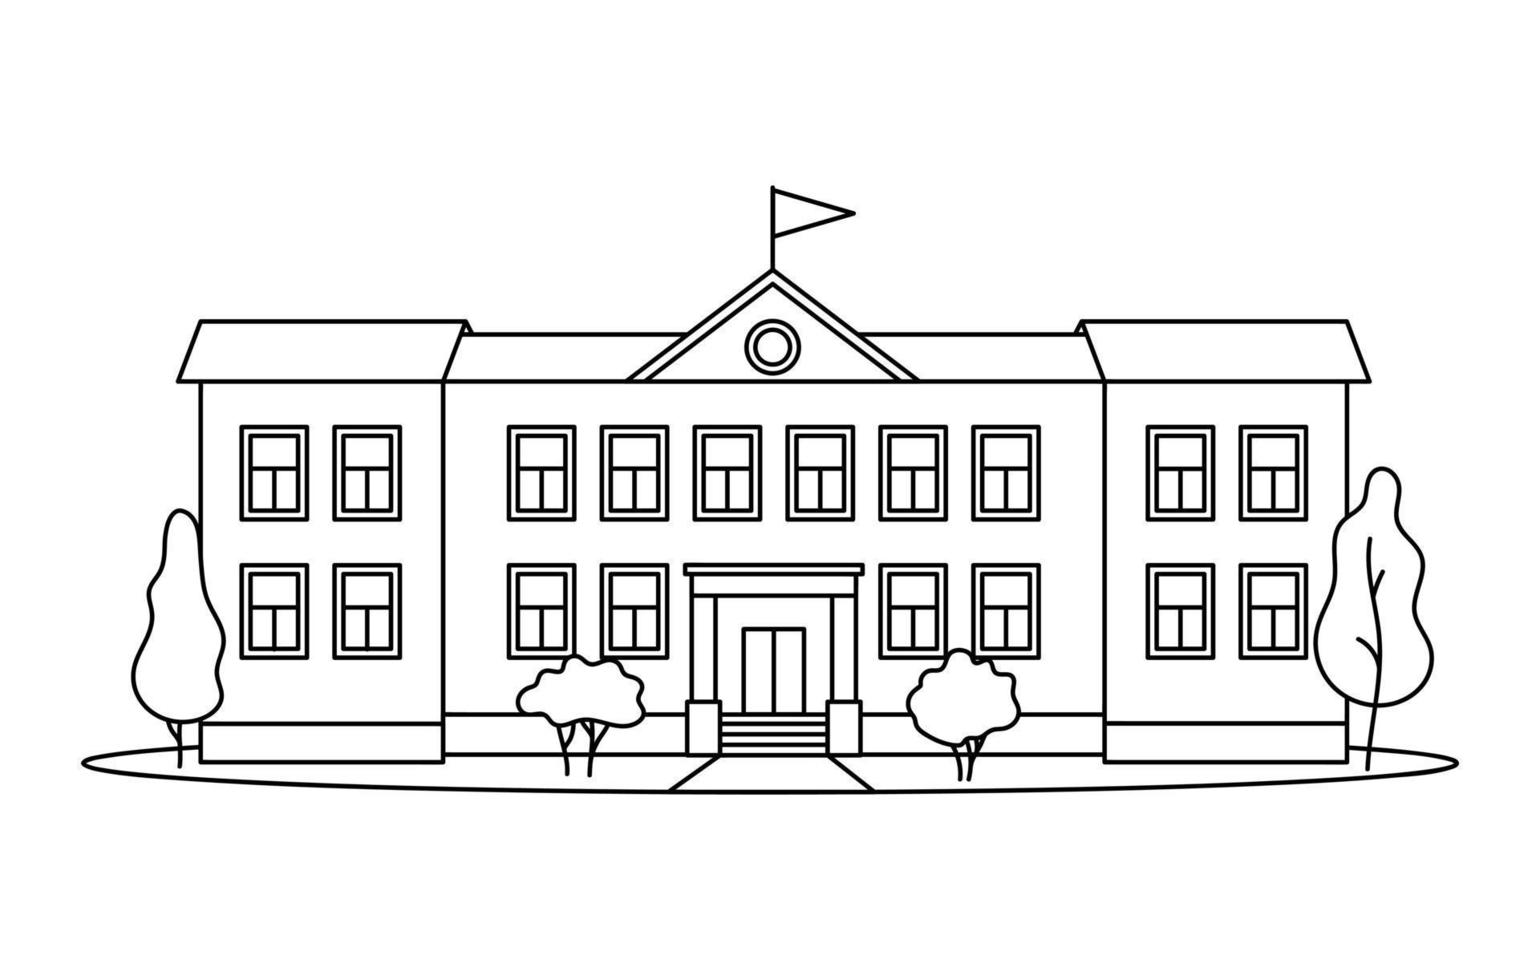 klassiek schoolgebouw met kolommen voor kinderen of leerling getekend met zwarte contourlijnen op een witte achtergrond. vector